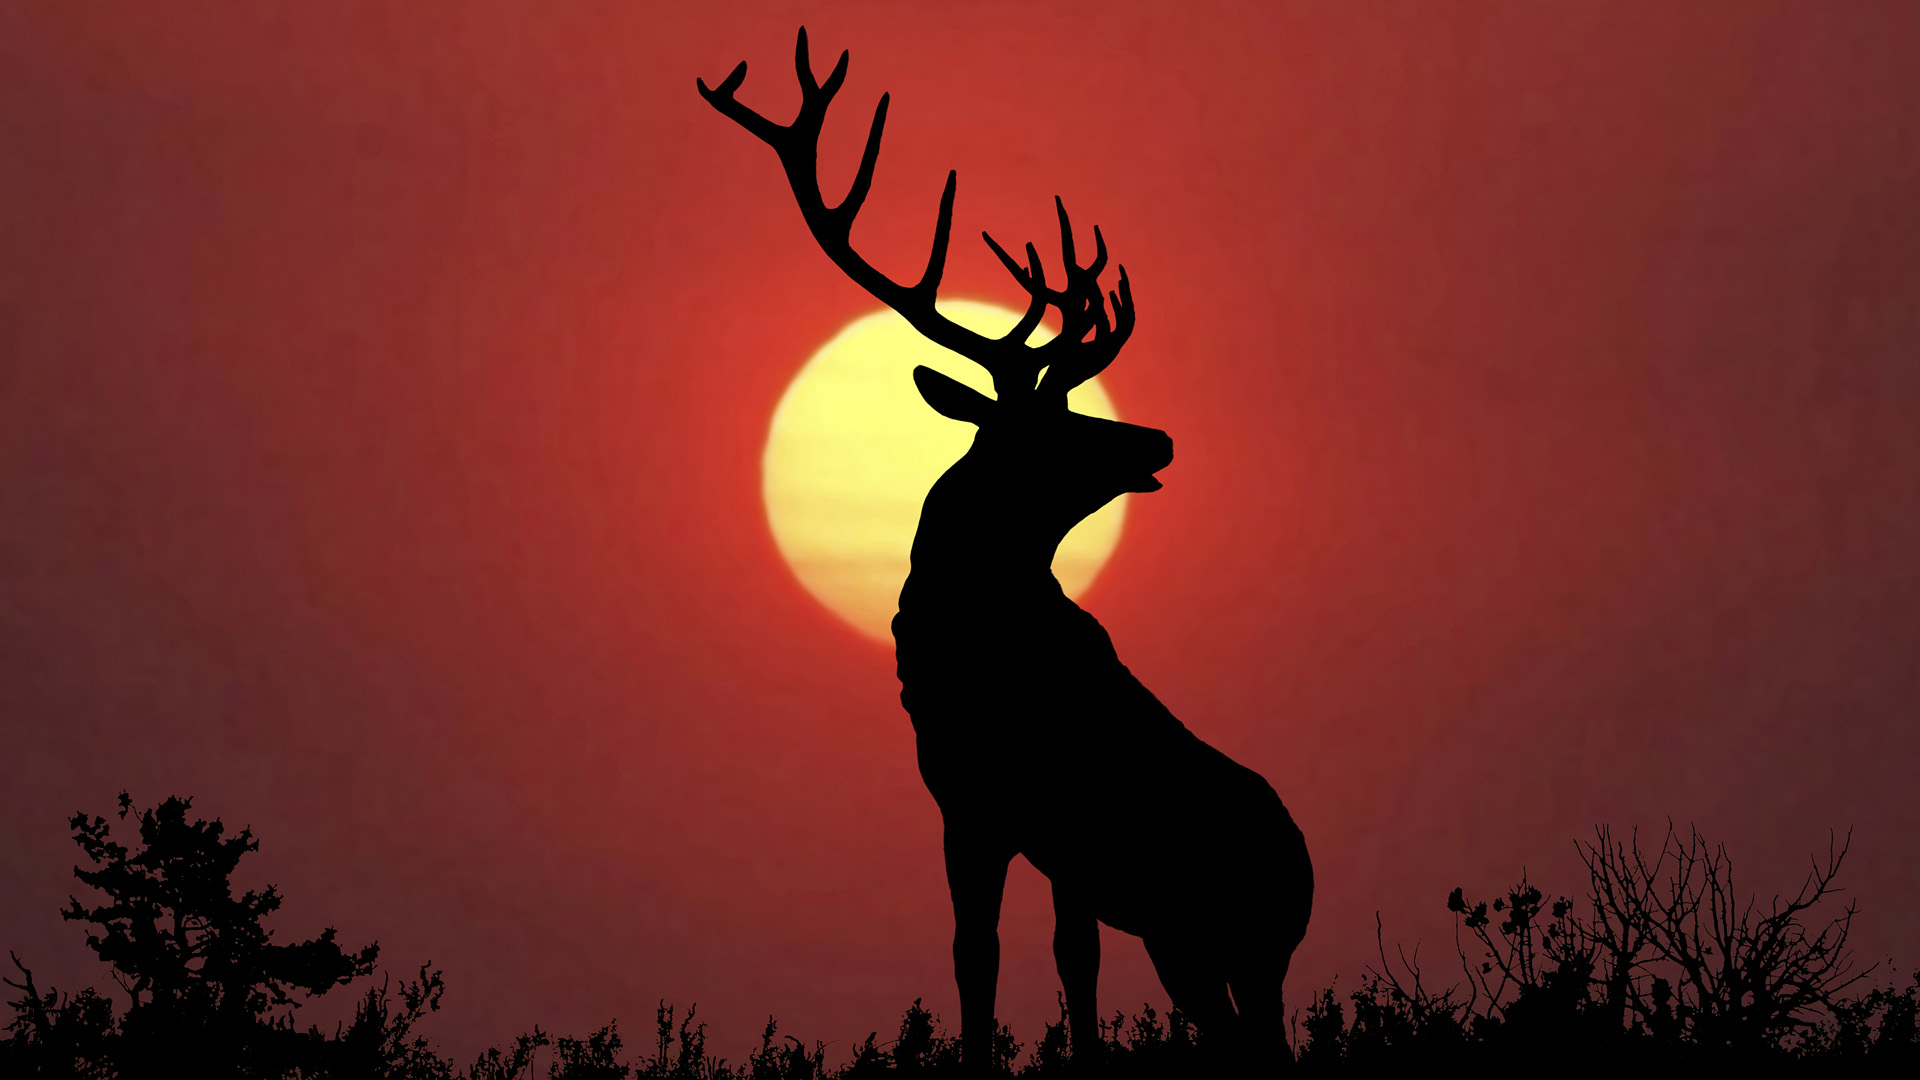 hd deer wallpaper